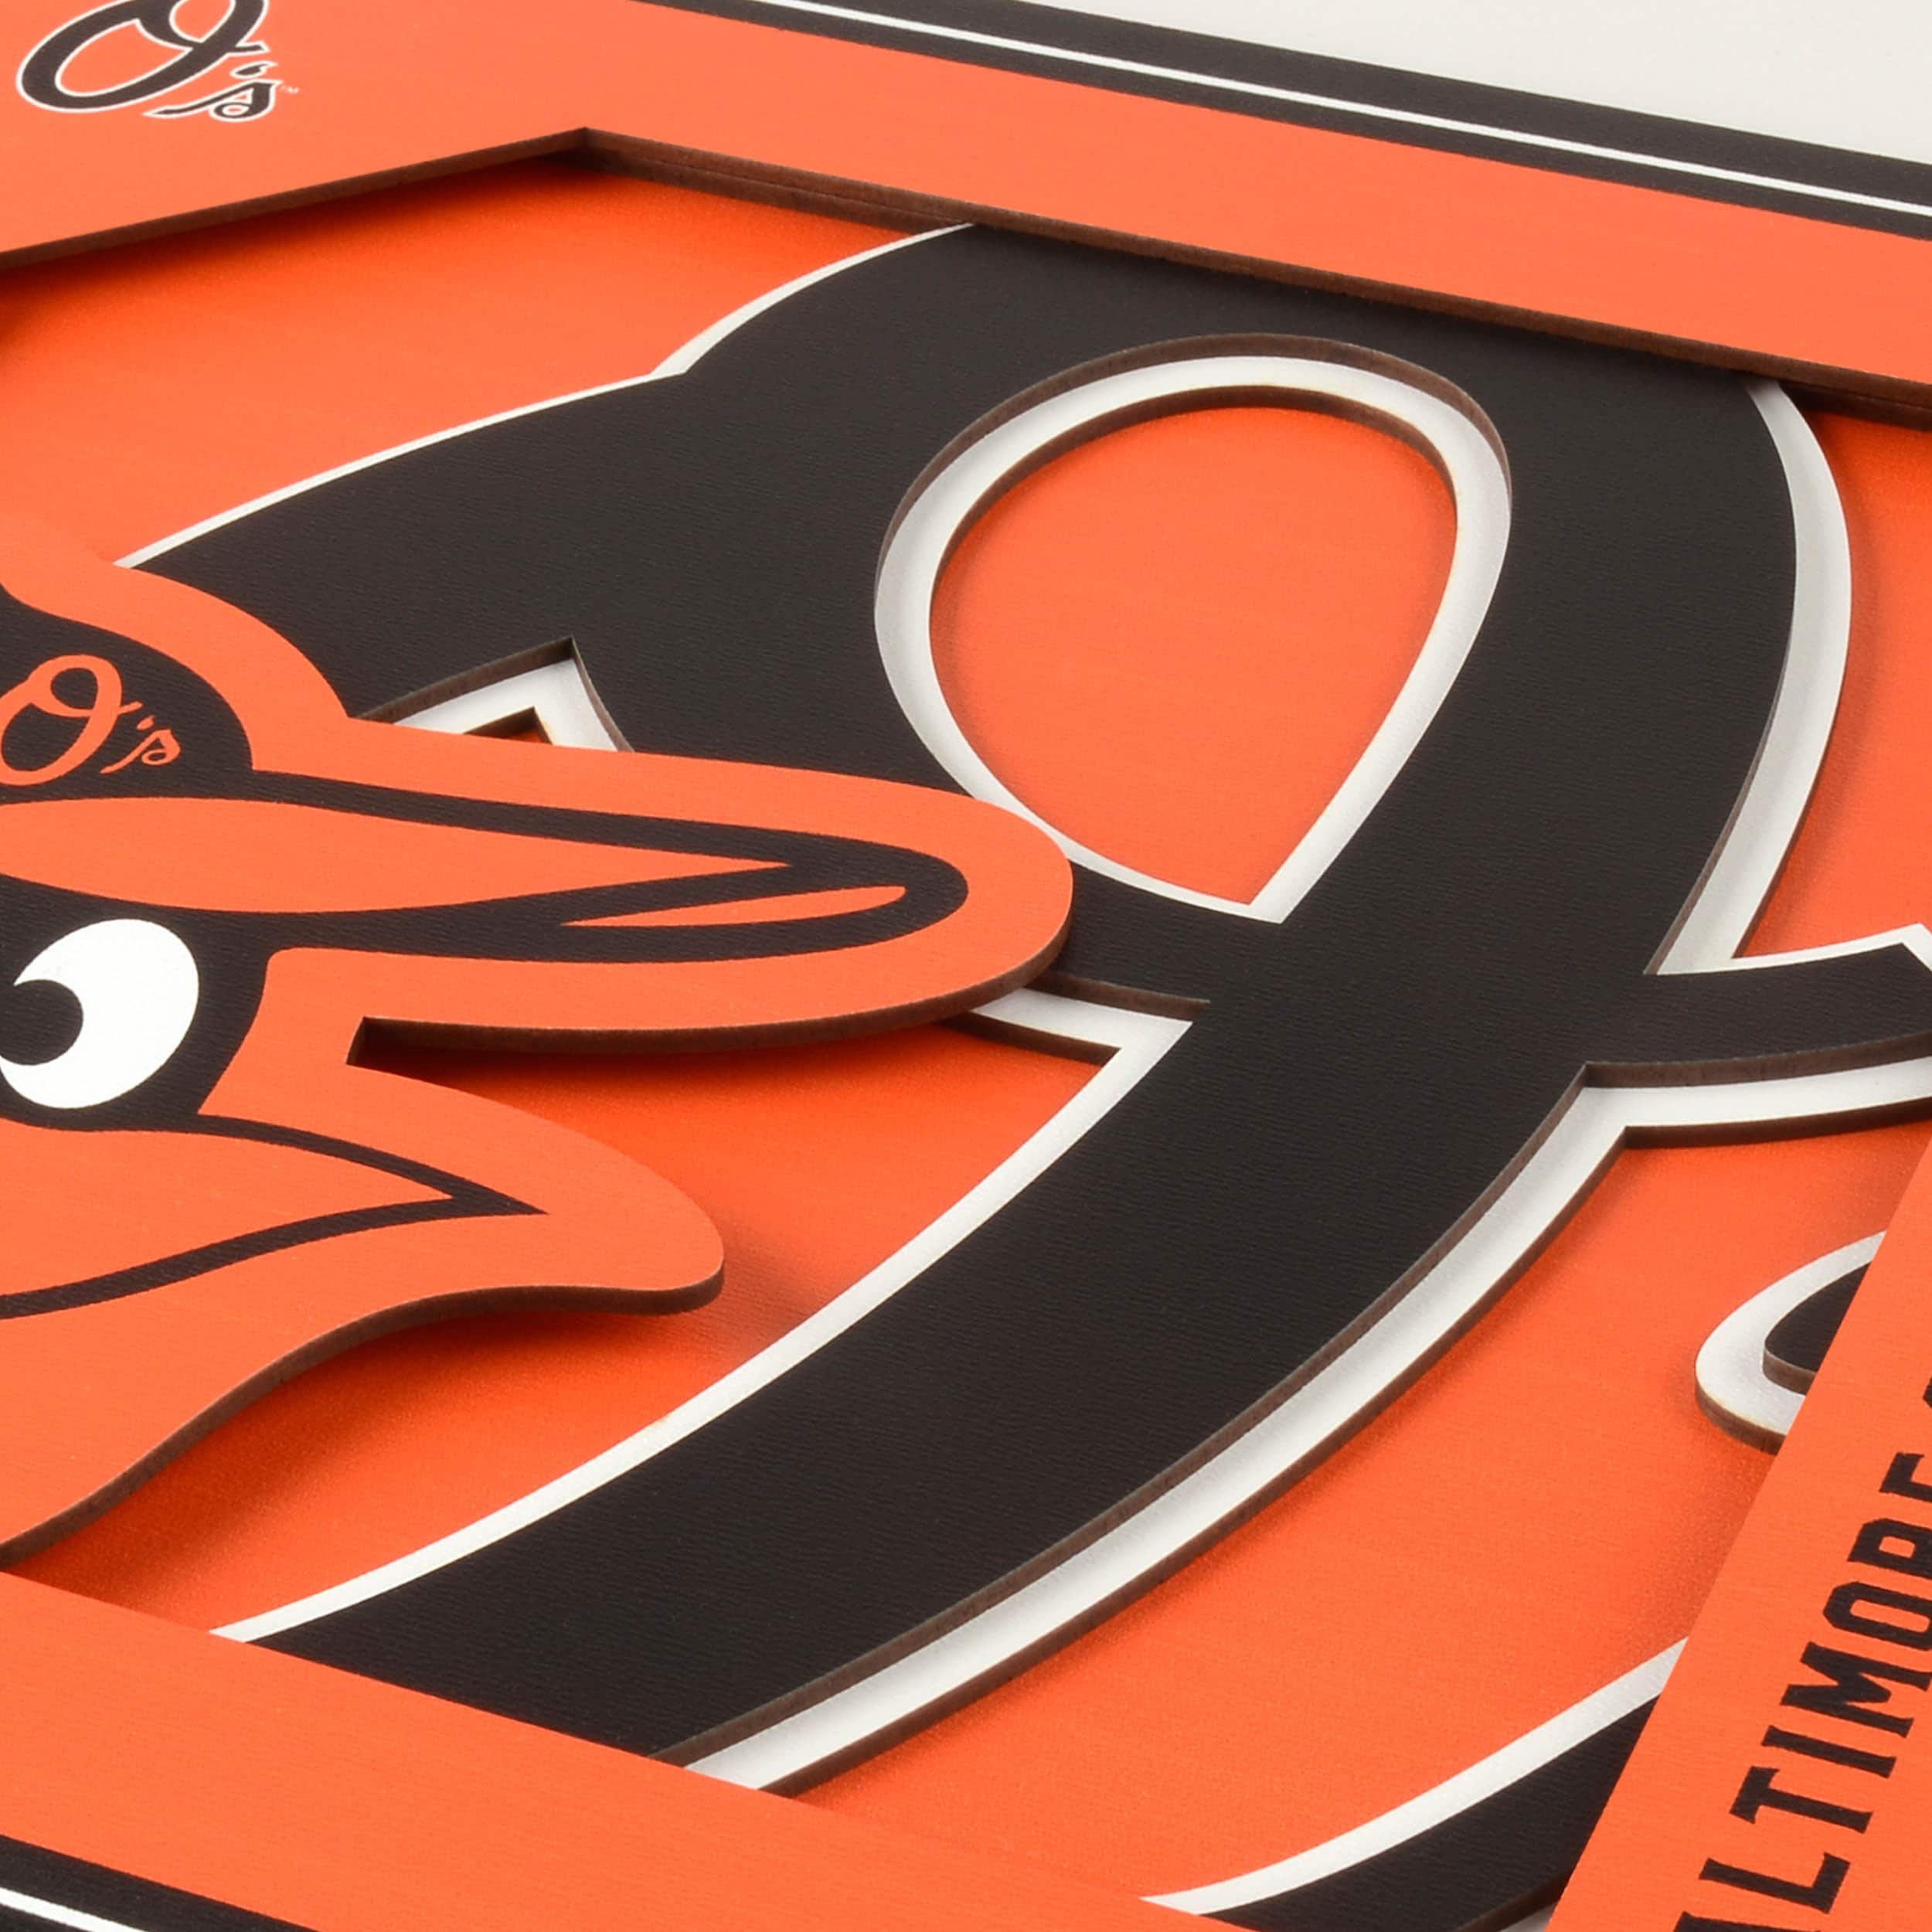 YouTheFan MLB St. Louis Cardinals 3D Logo Series Wall Art - 12x12